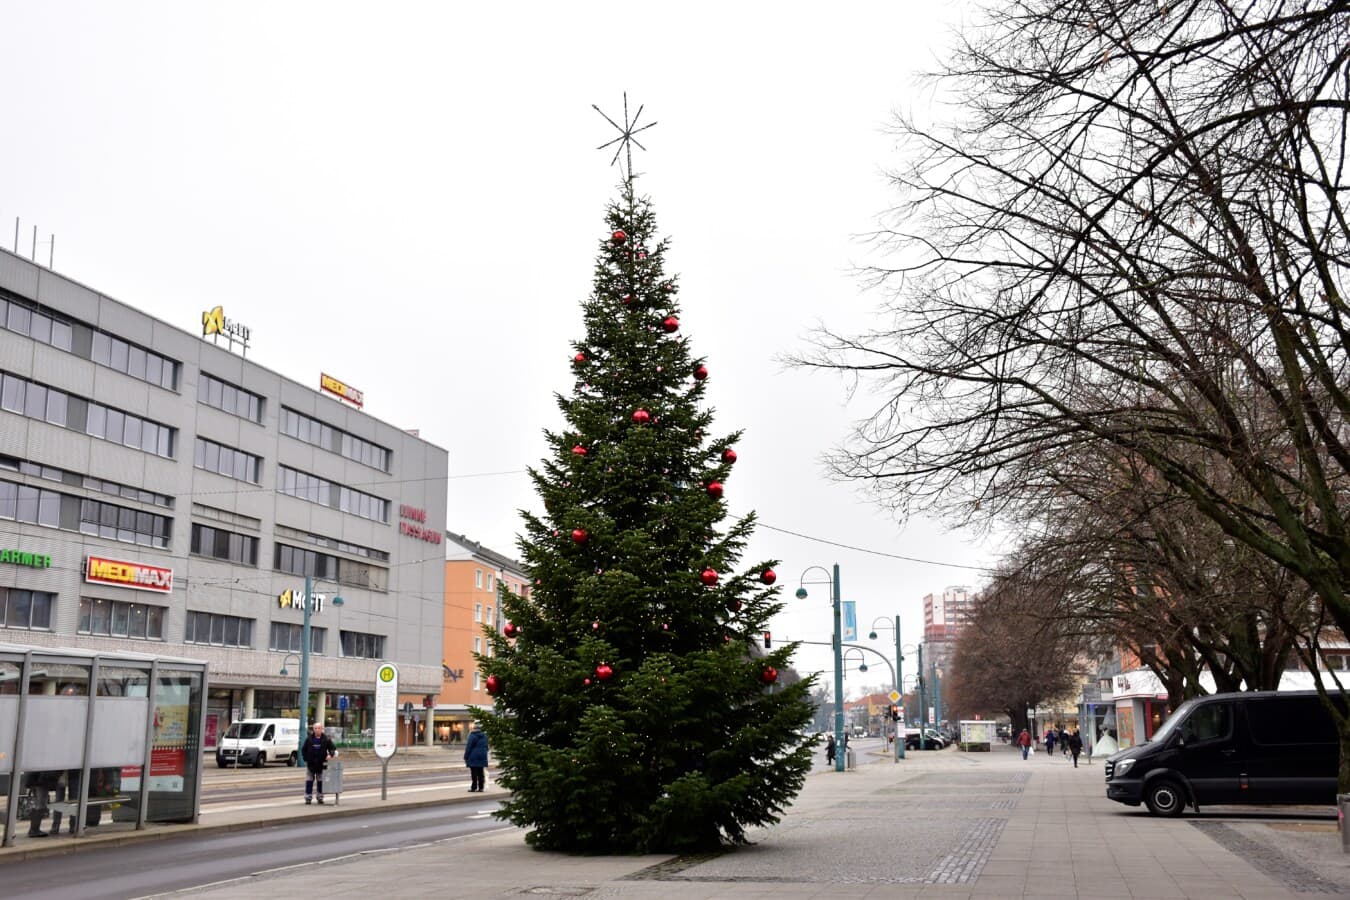 Weihnachtsbaum, Straße, Pflaster, Tageslicht, Stadtregion, Stadt, Struktur, Architektur, Weihnachten, Straße